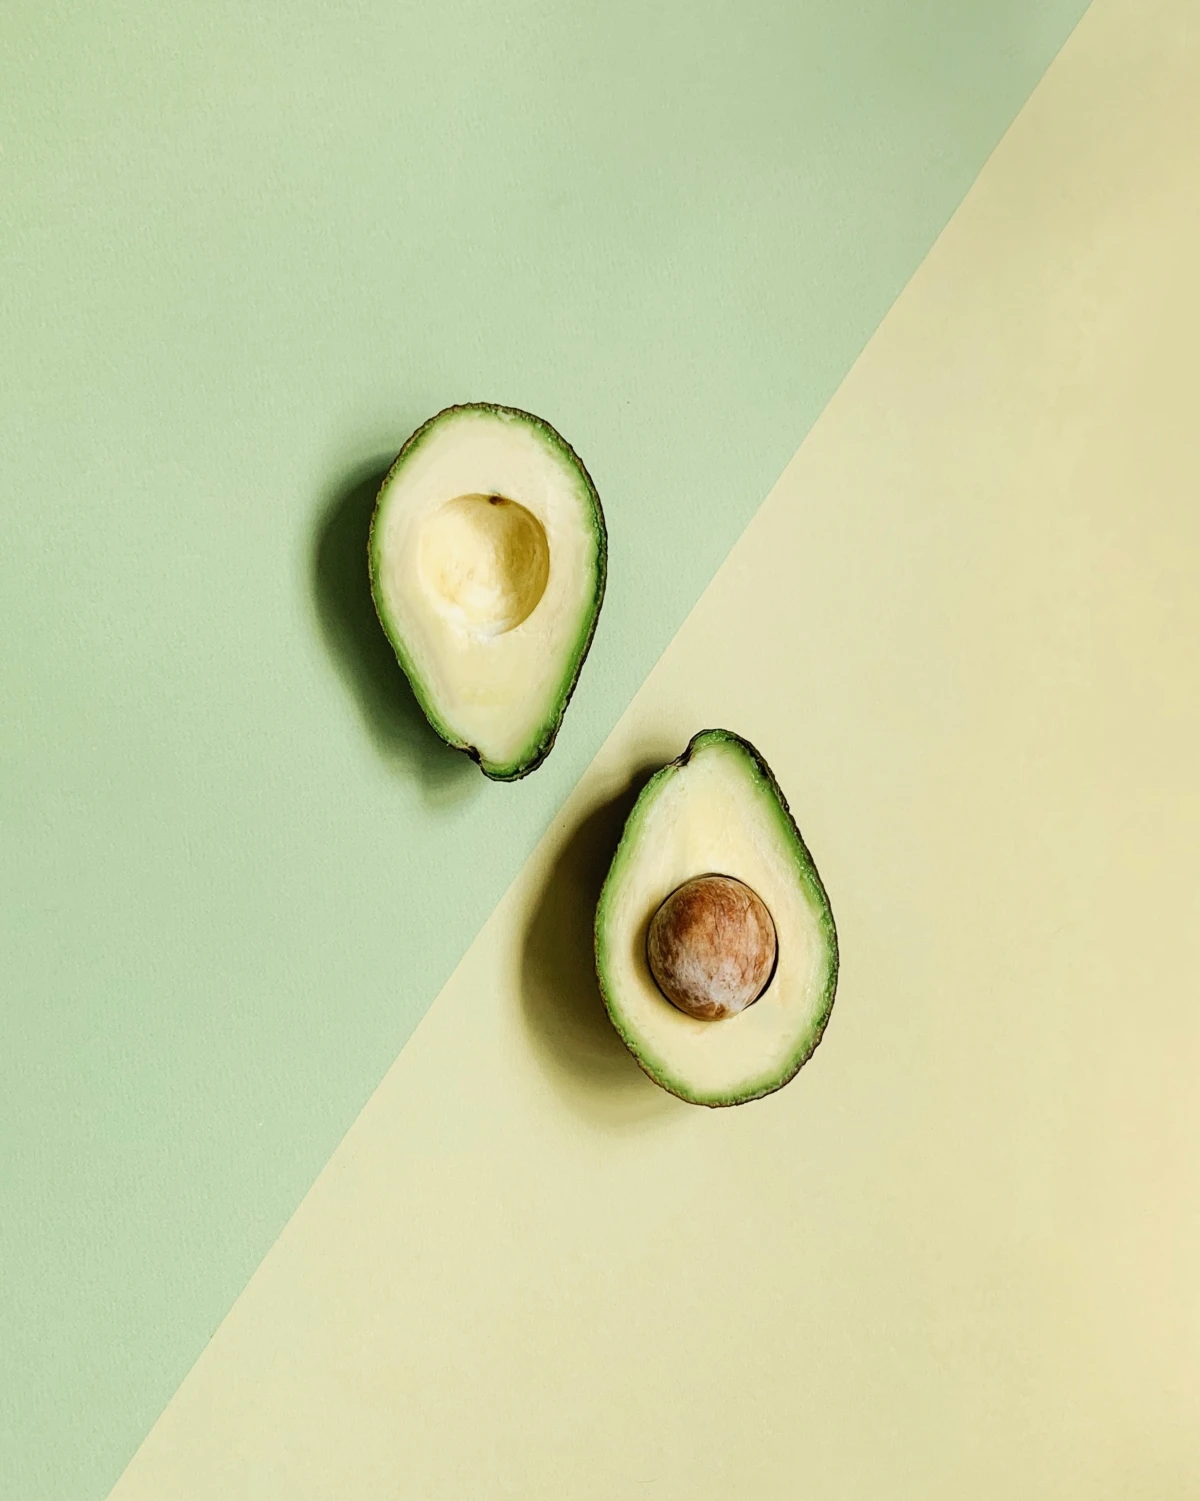 avocado substitutes avocado cut in half